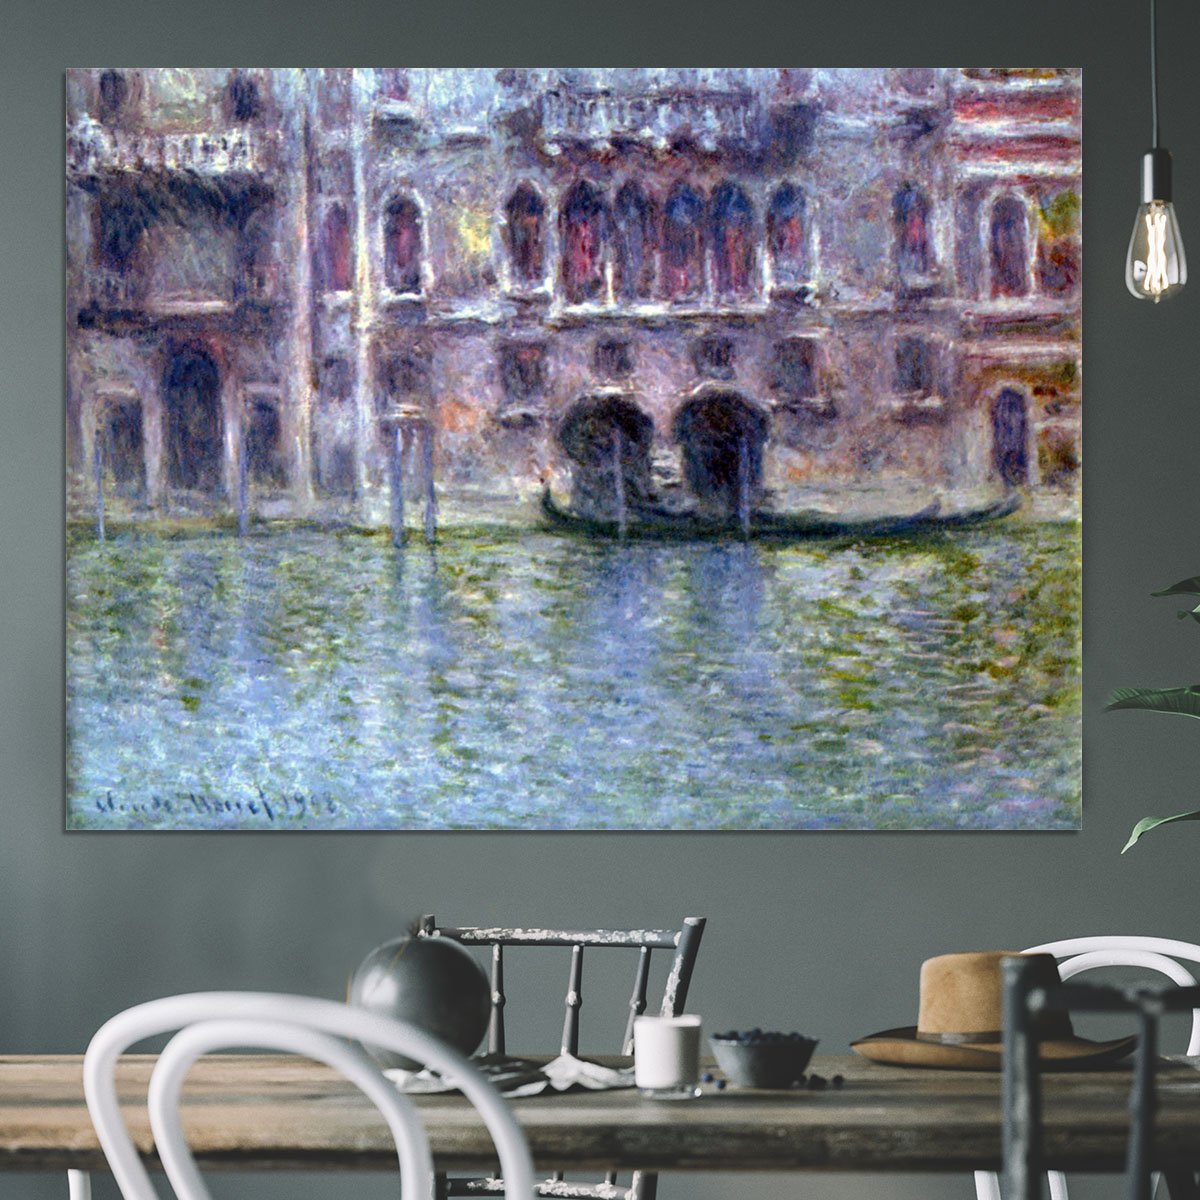 Palazzo da Mula Venice by Monet Canvas Print or Poster